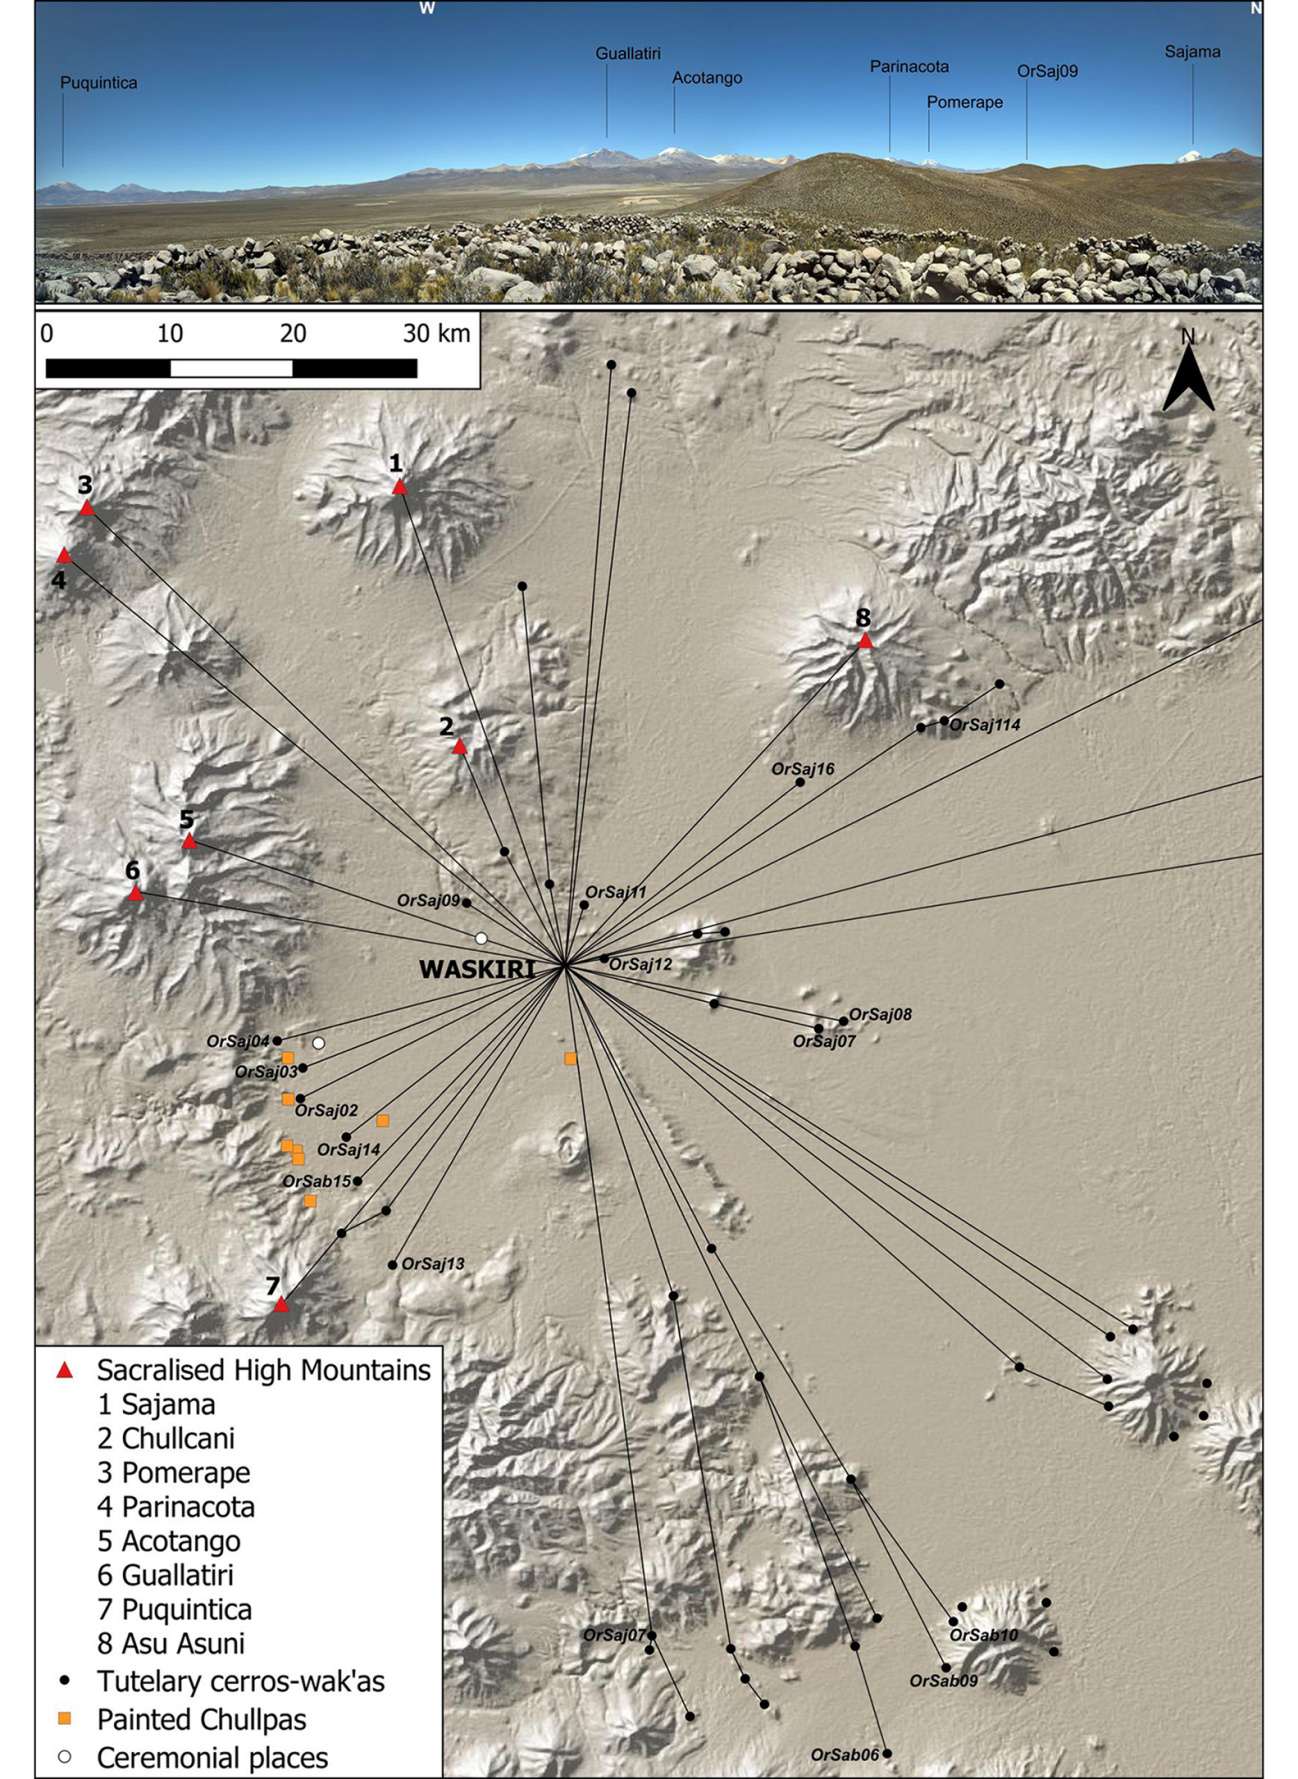 Поглед од Васкири, покажувајќи ги силуетите на главните свети планини во регионот (врвот); дистрибуција на свети места околу Васкири (долу).